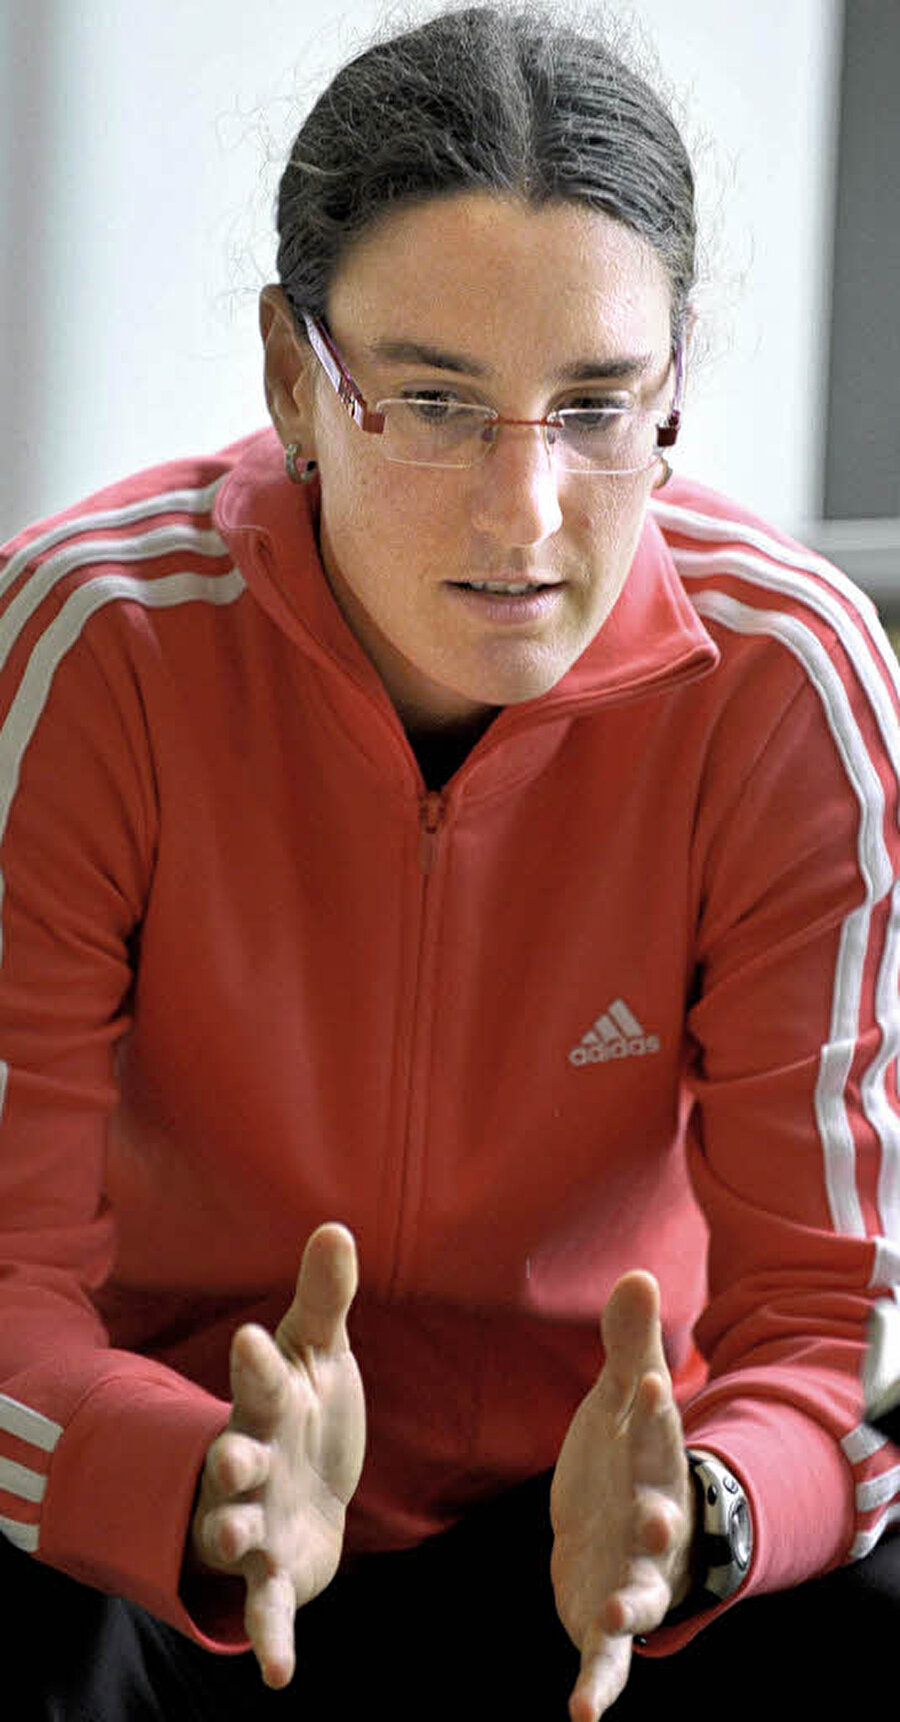 
                                    
                                    
                                    Prinz, 9 yaşında SV Dörnigheim takımında altyapı kariyerine adım attı.
                                
                                
                                